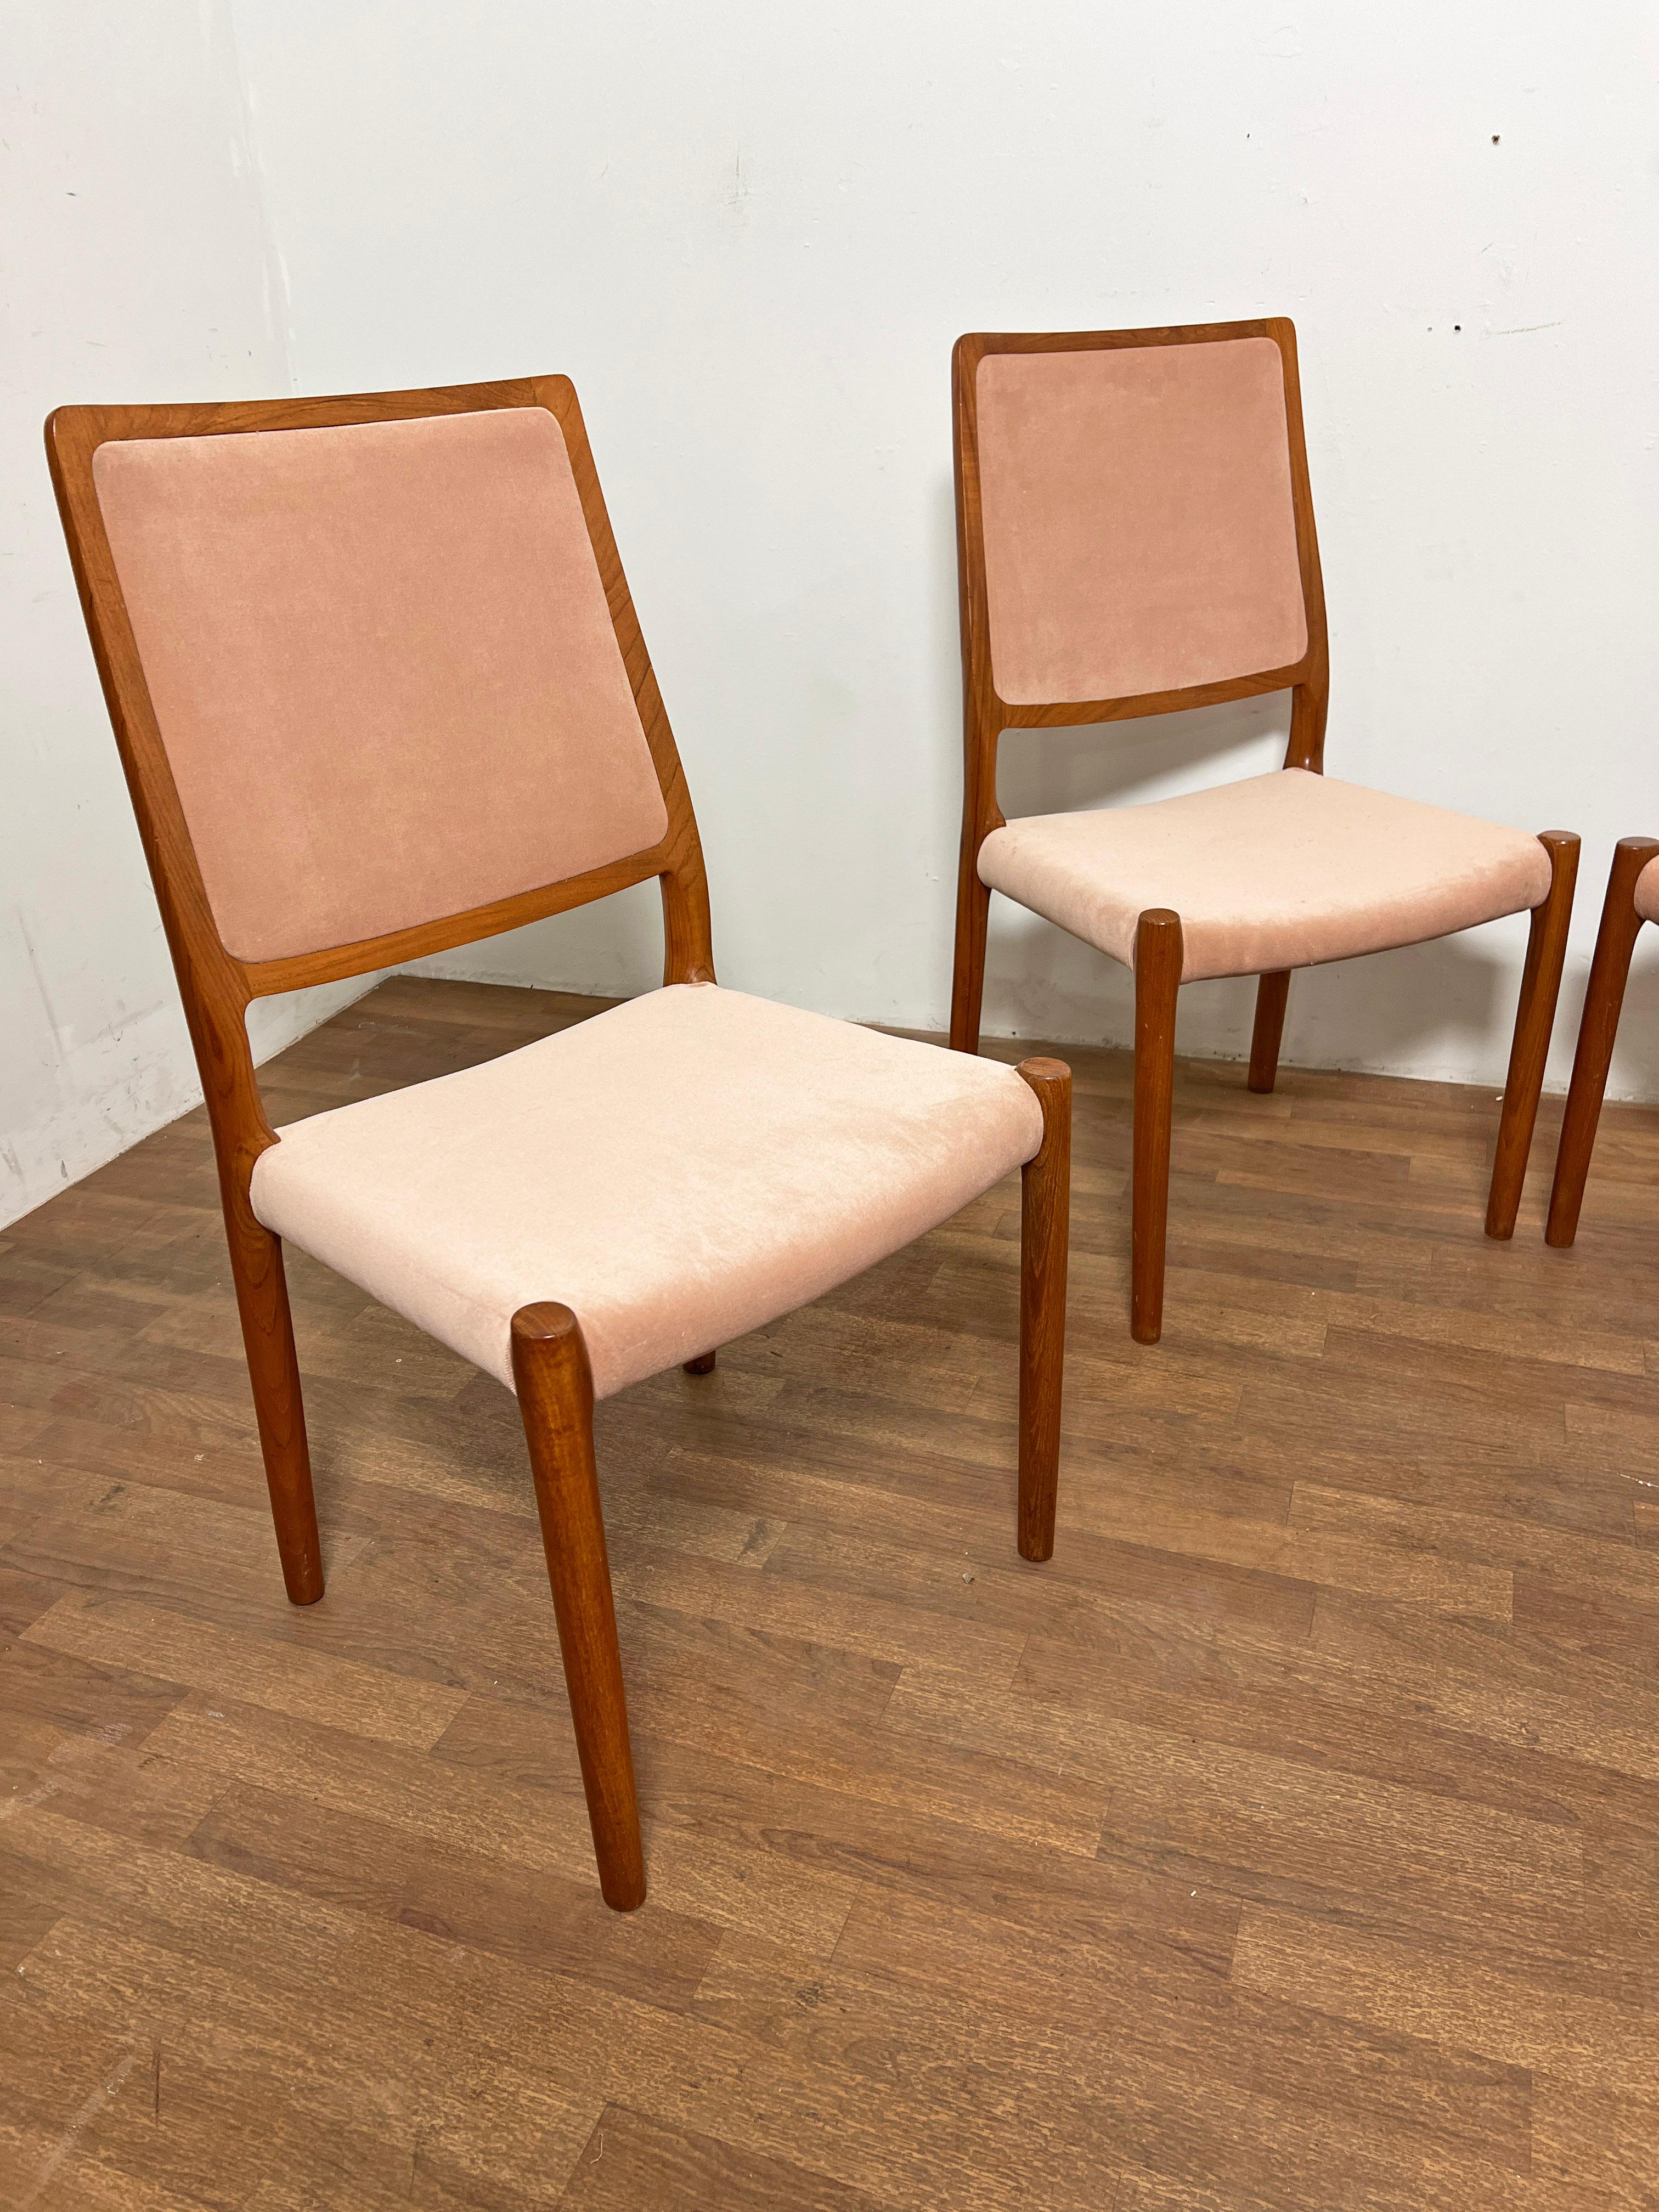 Ensemble de quatre chaises de salle à manger en teck, Design/One, conçu par Niels Moller pour I.L.A. Moller, Danemark, vers le milieu des années 1980.